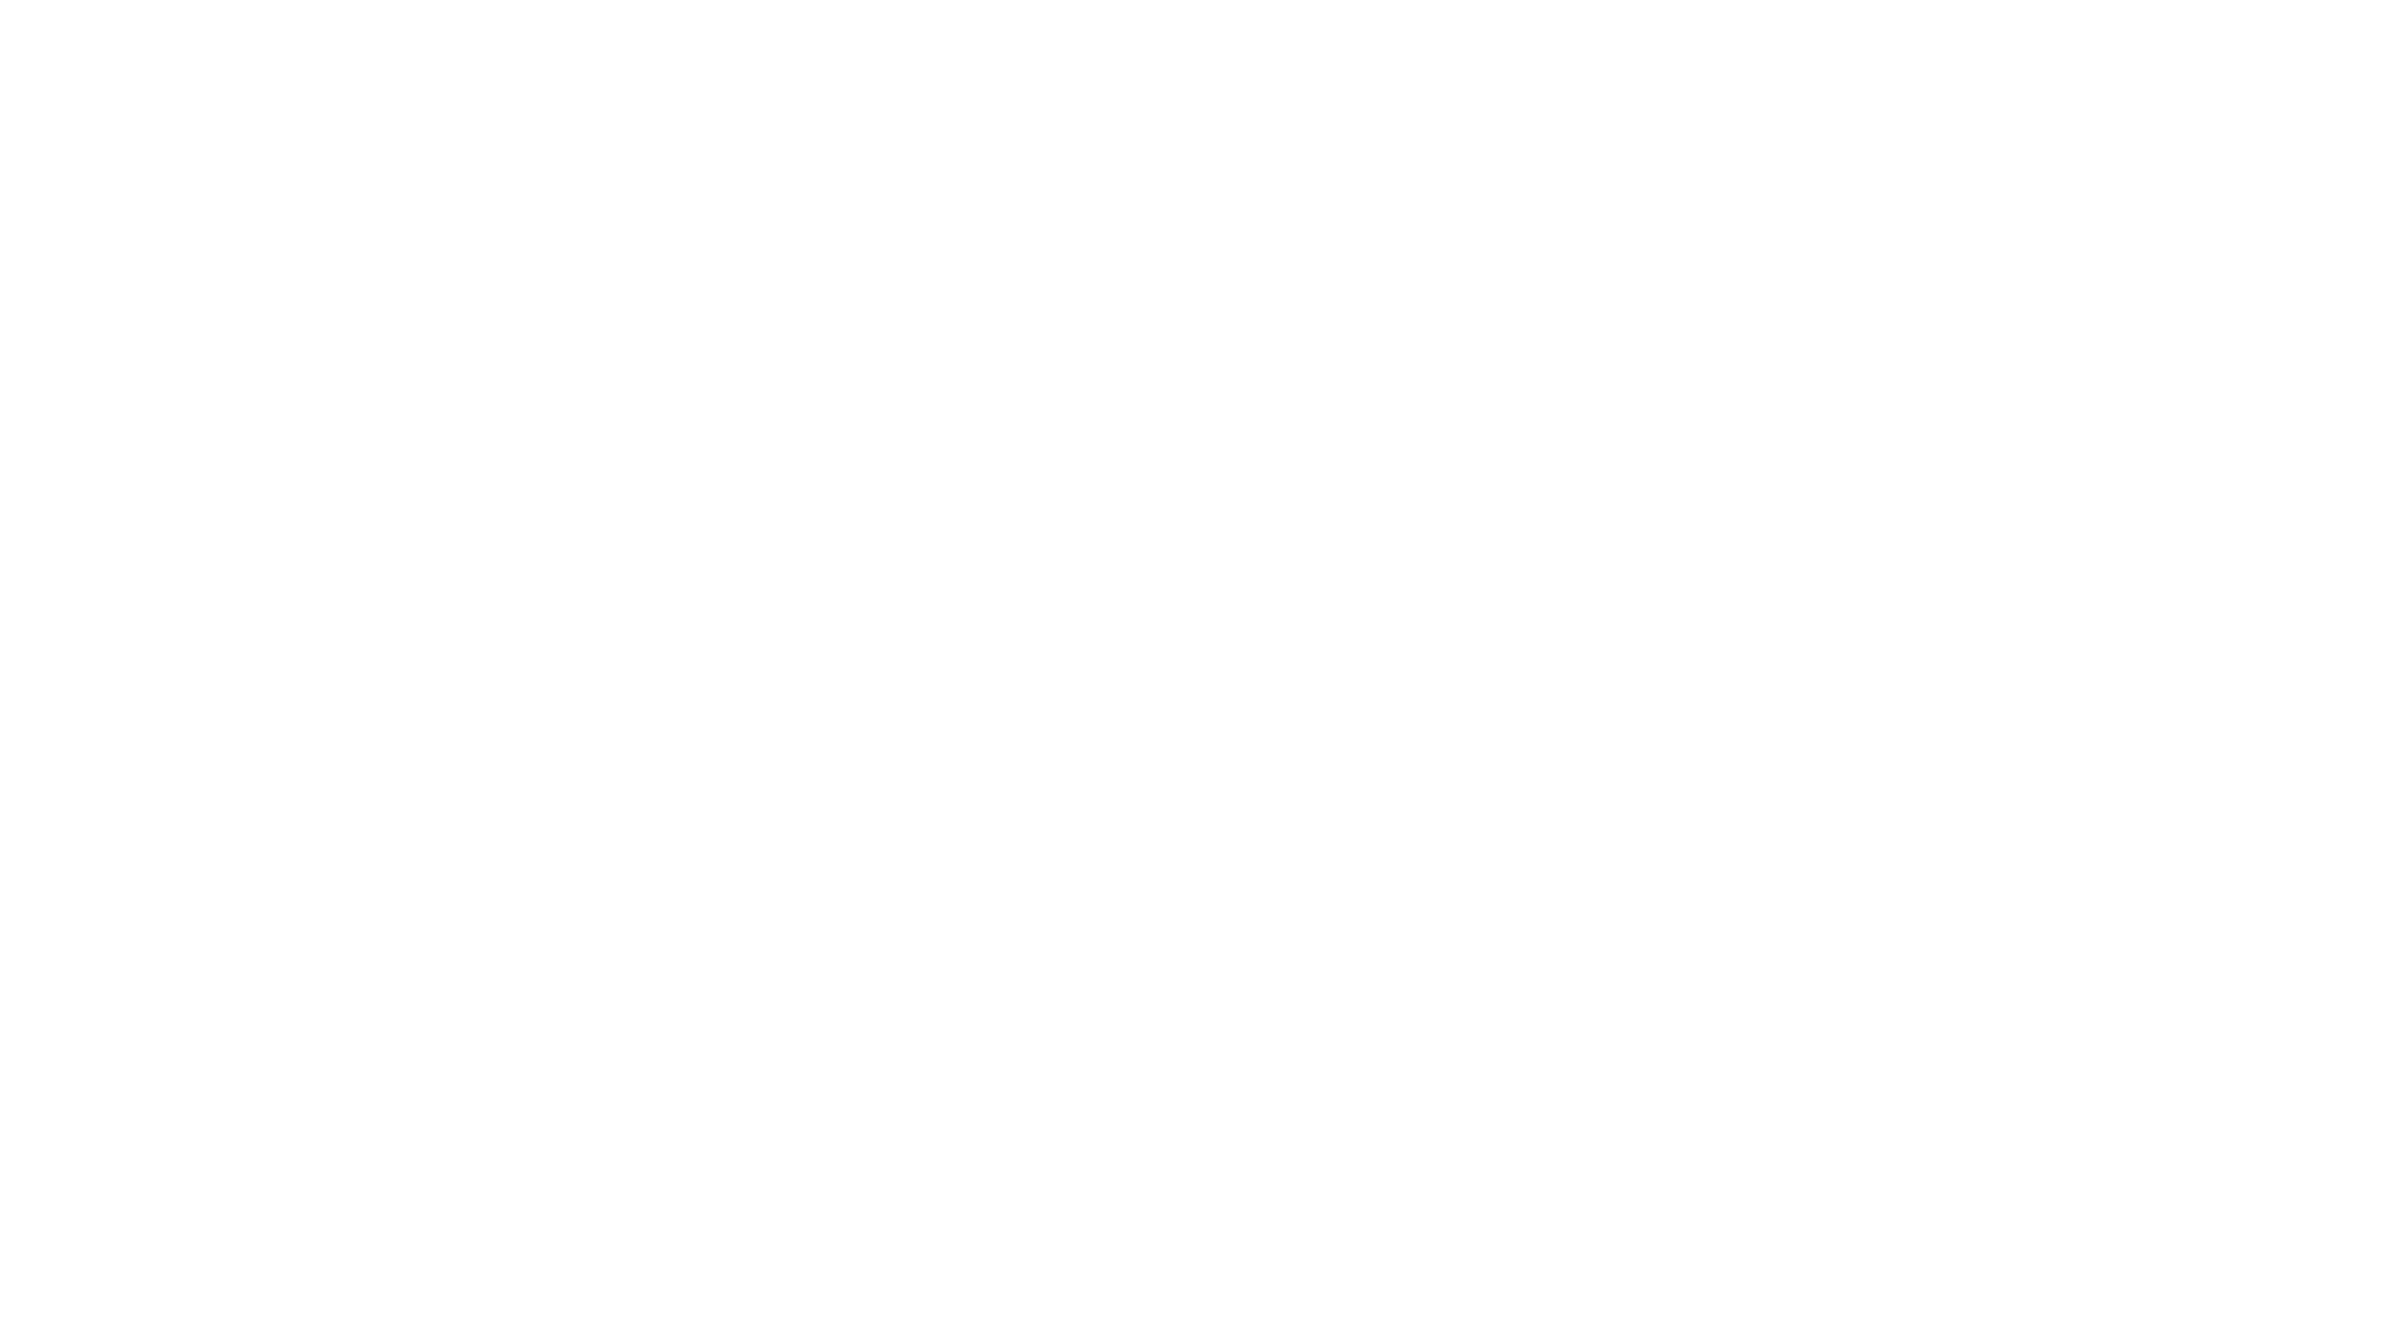 Black and White University of Washington Logo - HCDE Logo Files. Human Centered Design & Engineering